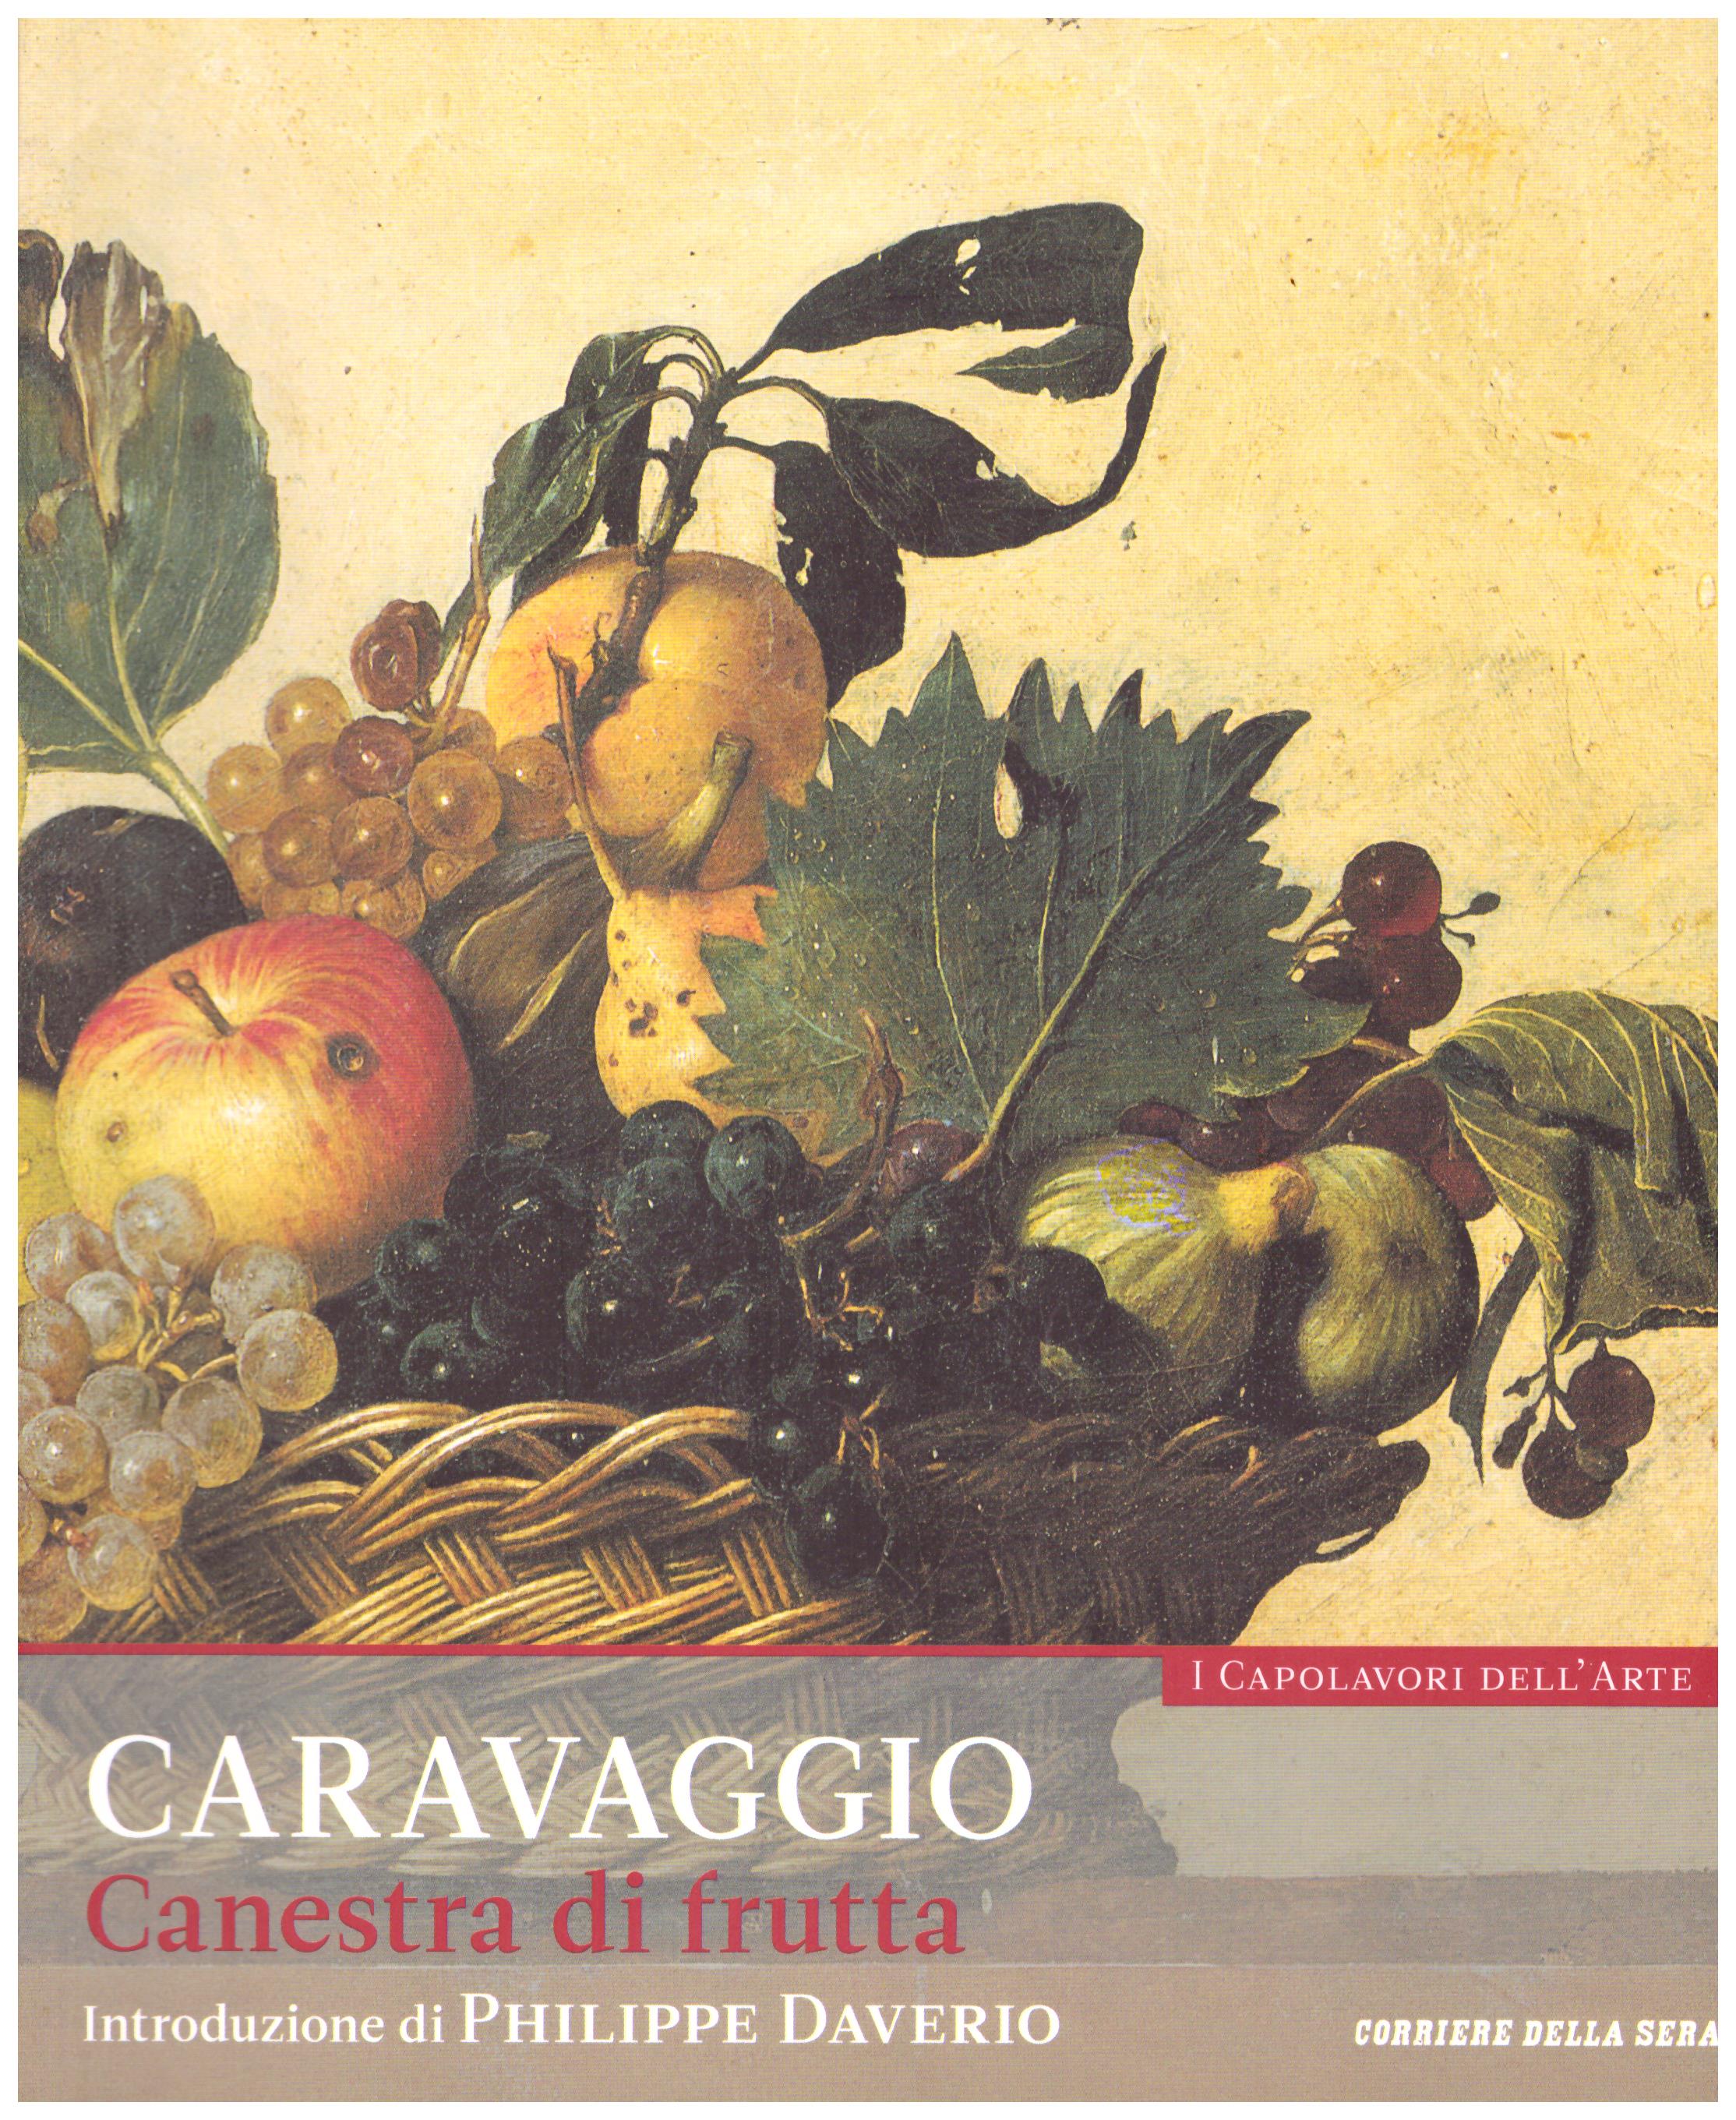 Titolo: I capolavori dell'arte, Caravaggio  n.2 Autore : AA.VV.   Editore: education,it/corriere della sera, 2015